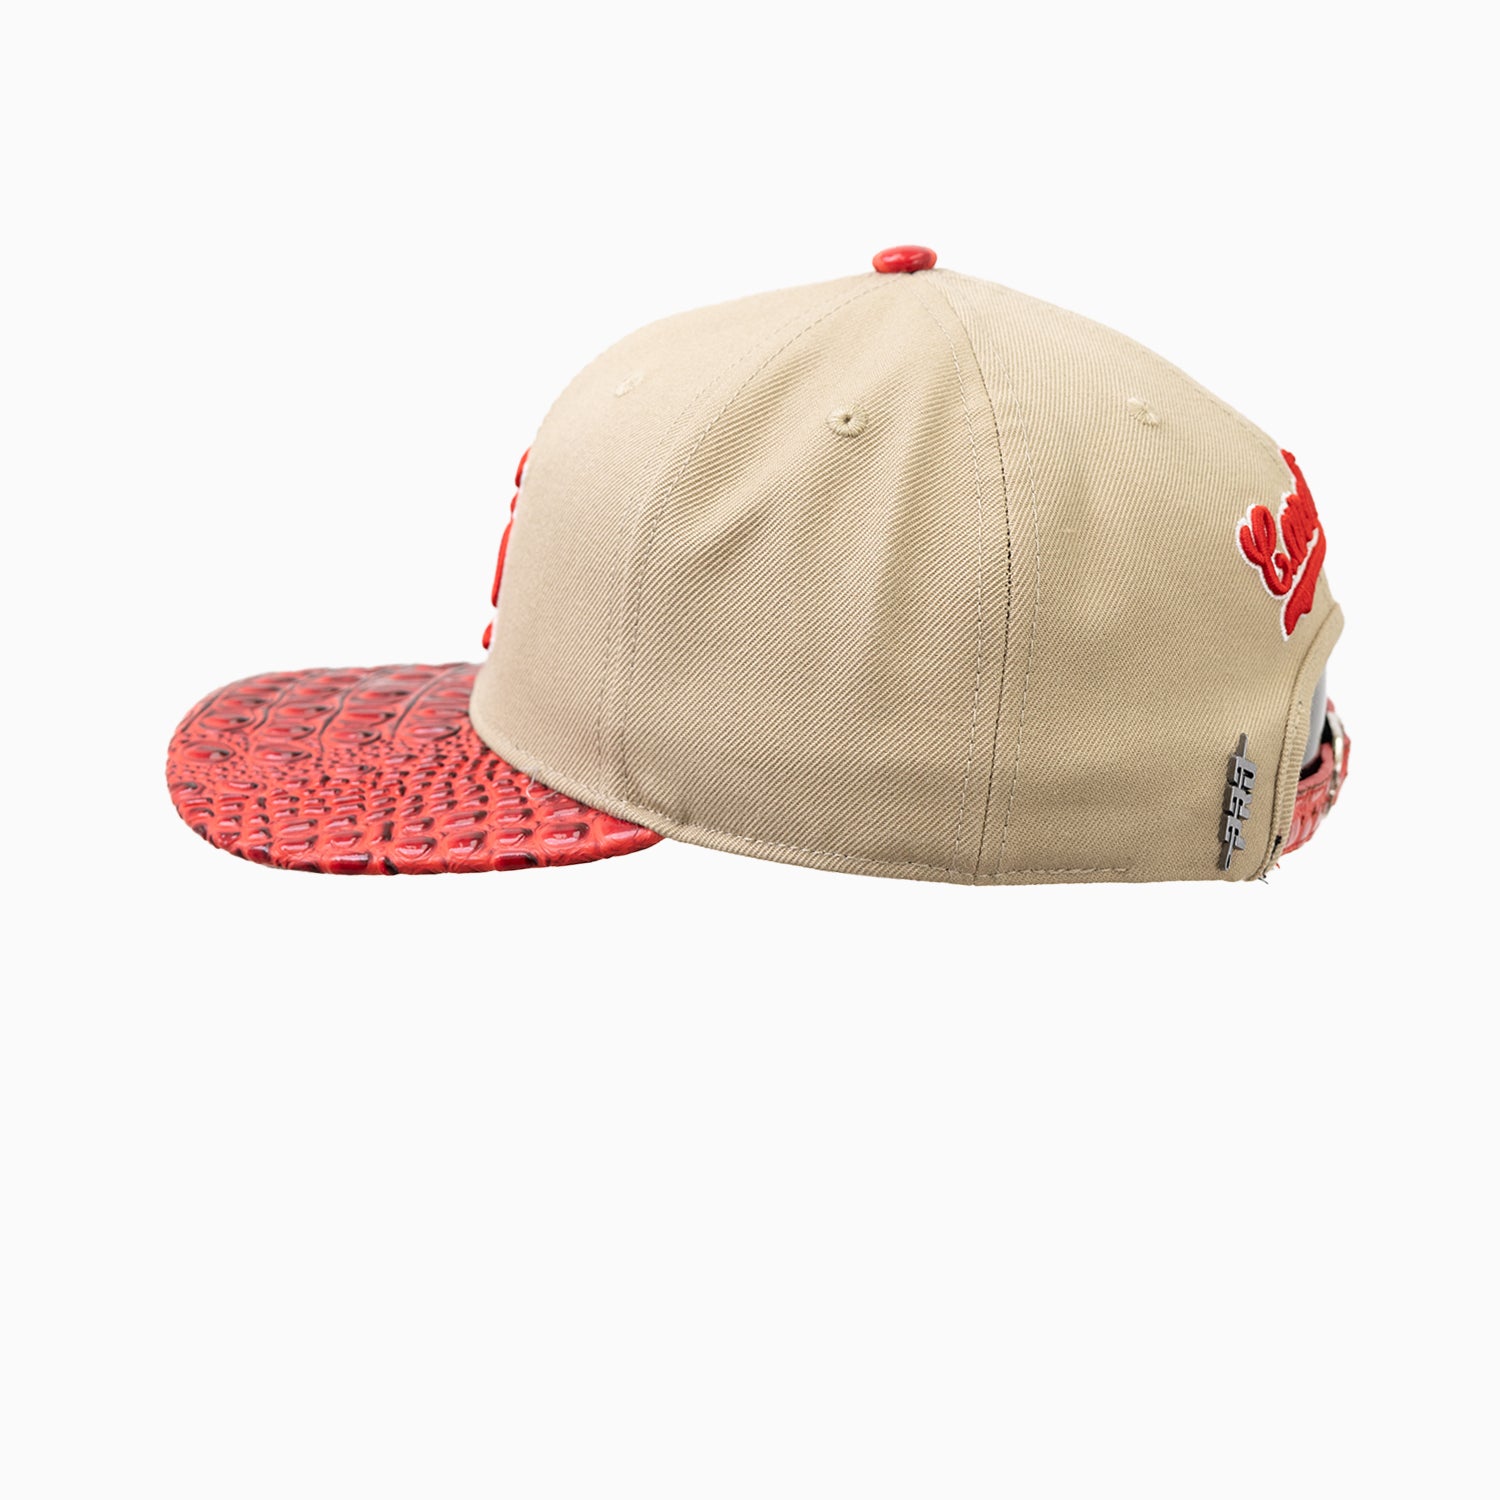 pro-standard-st-louis-cardinals-mlb-leather-visor-strapback-hat-lsc7314861-khk